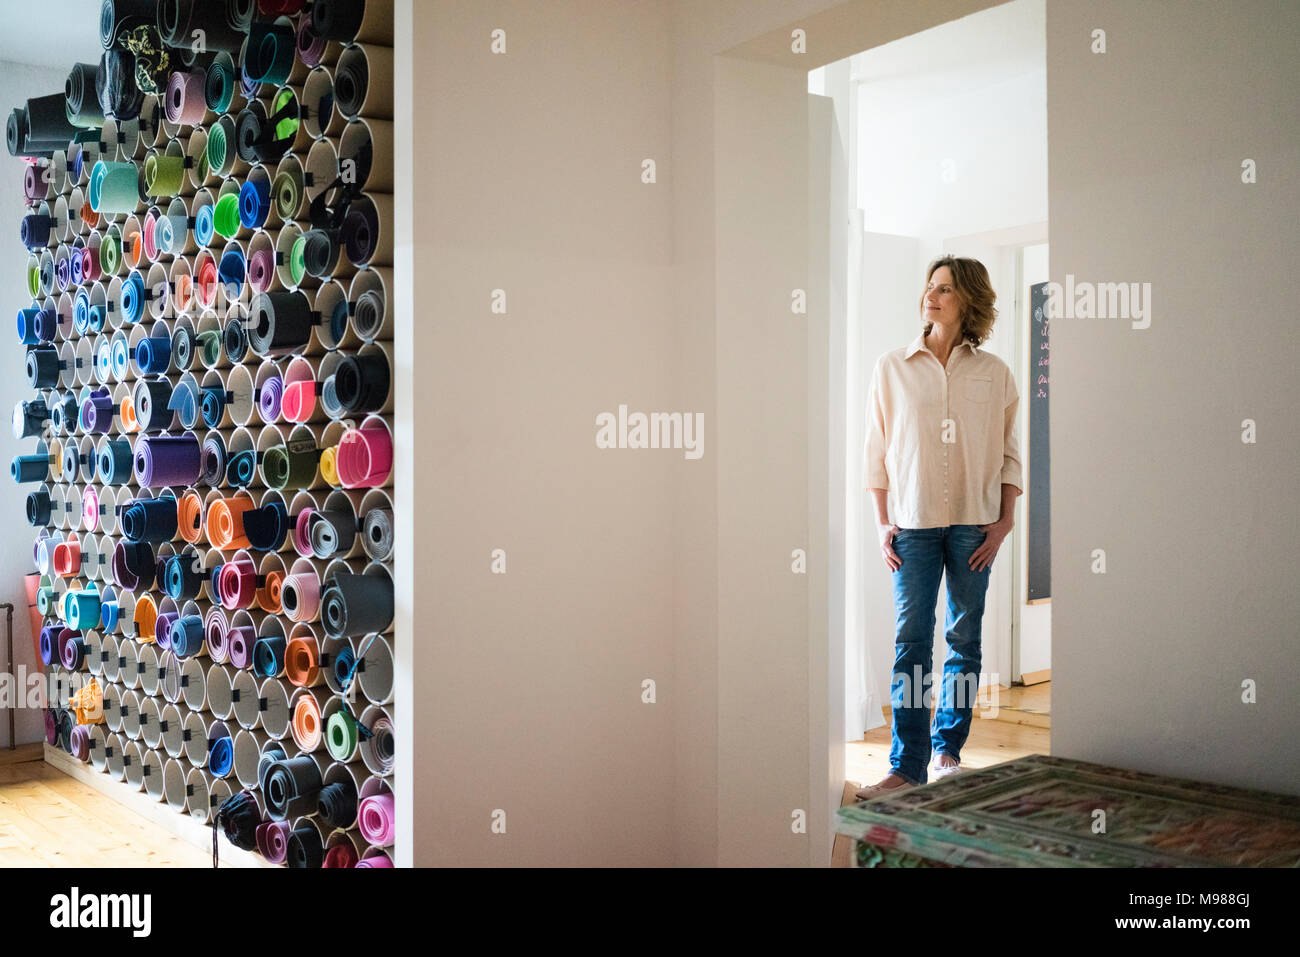 Mature Woman standing in a room avec choix de tapis de yoga Banque D'Images